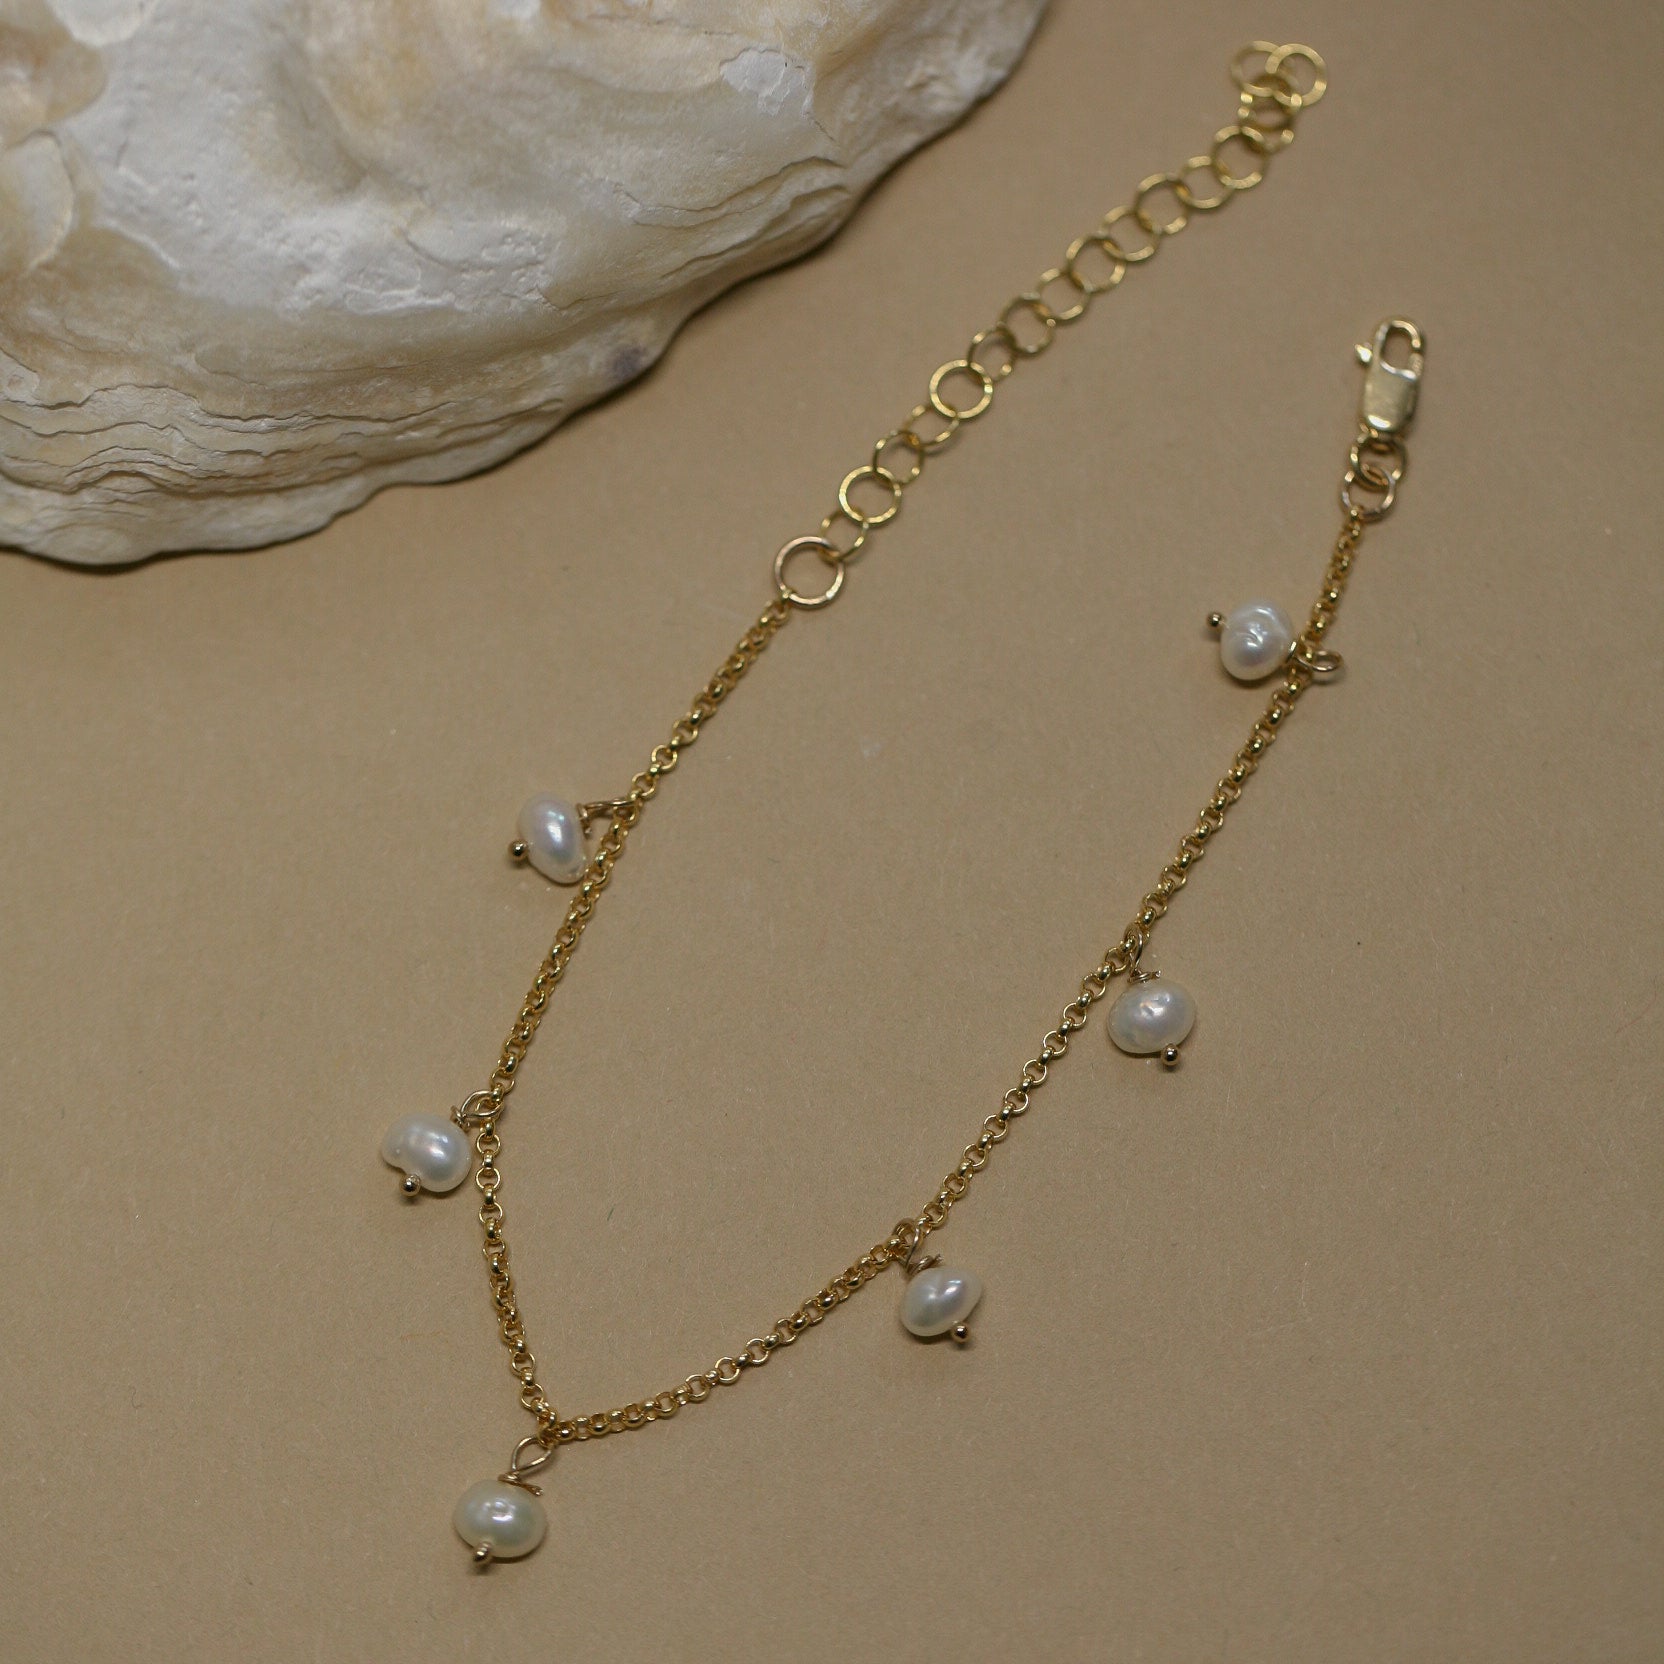 Dangling pearl bracelet